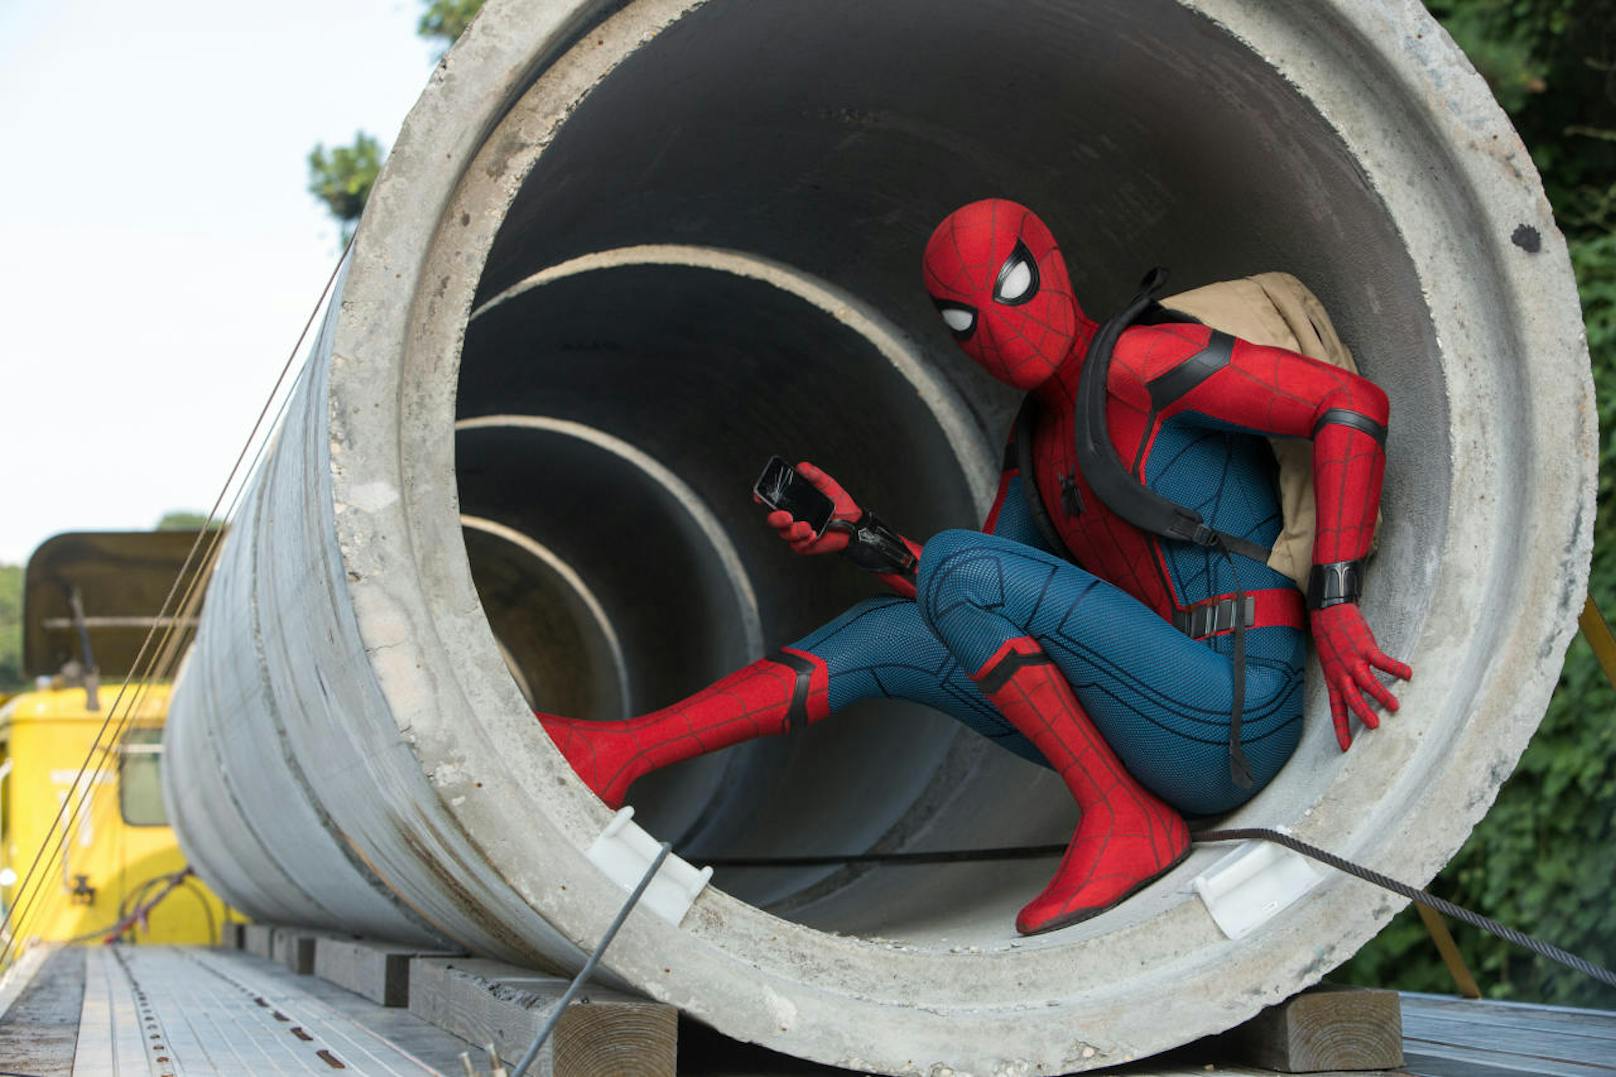 Filmbrunch Juli 17: Spiderman